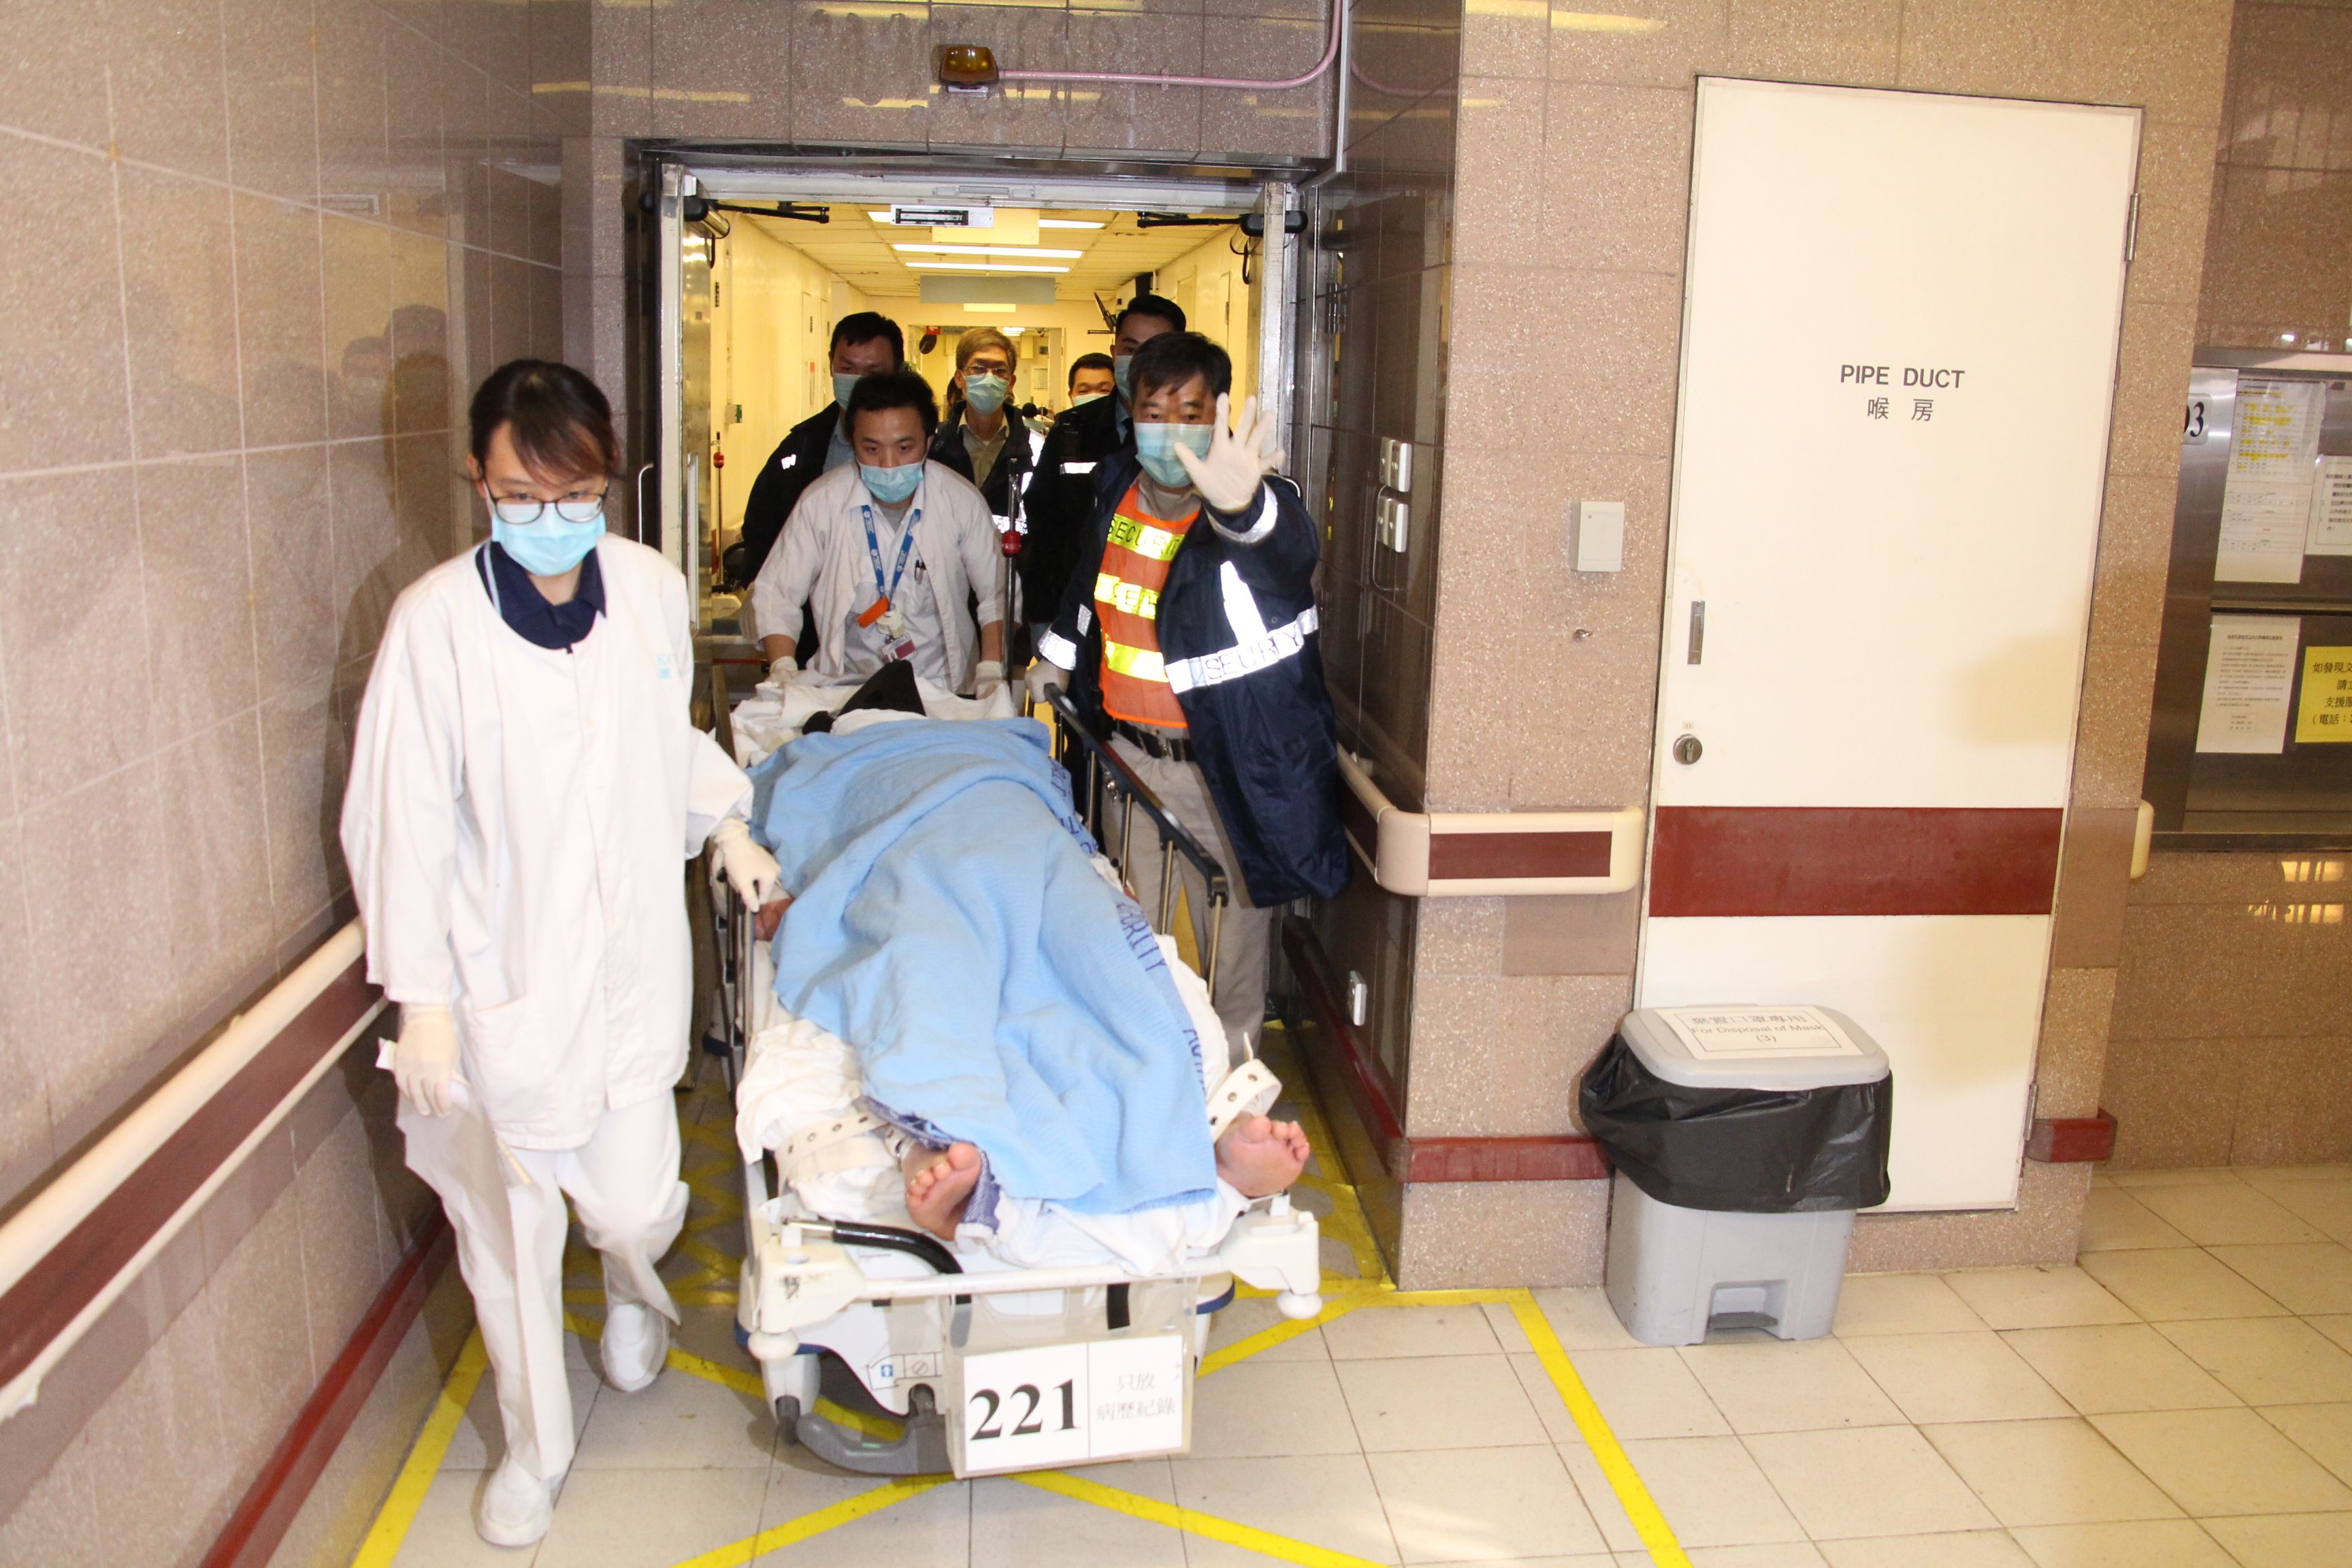 نقل ضحايا جريمة قتل لمستشفى فى هونج كونج